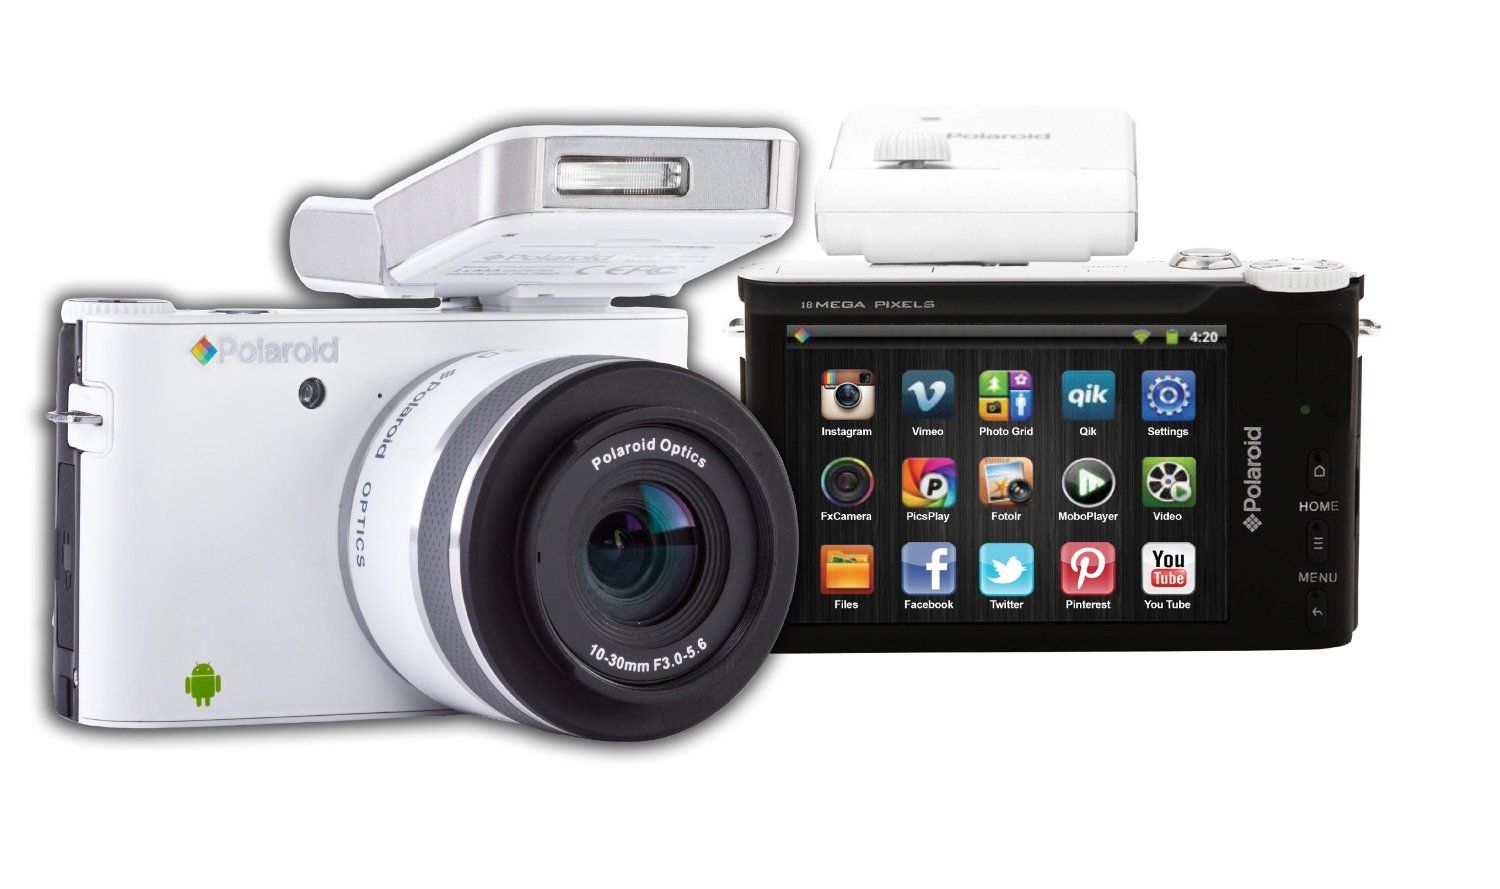 วางจำหน่ายแล้ว Polaroid iM1836 กล้อง micro 4/3 เปลี่ยนเลนส์ได้ ที่มาพร้อม Android OS